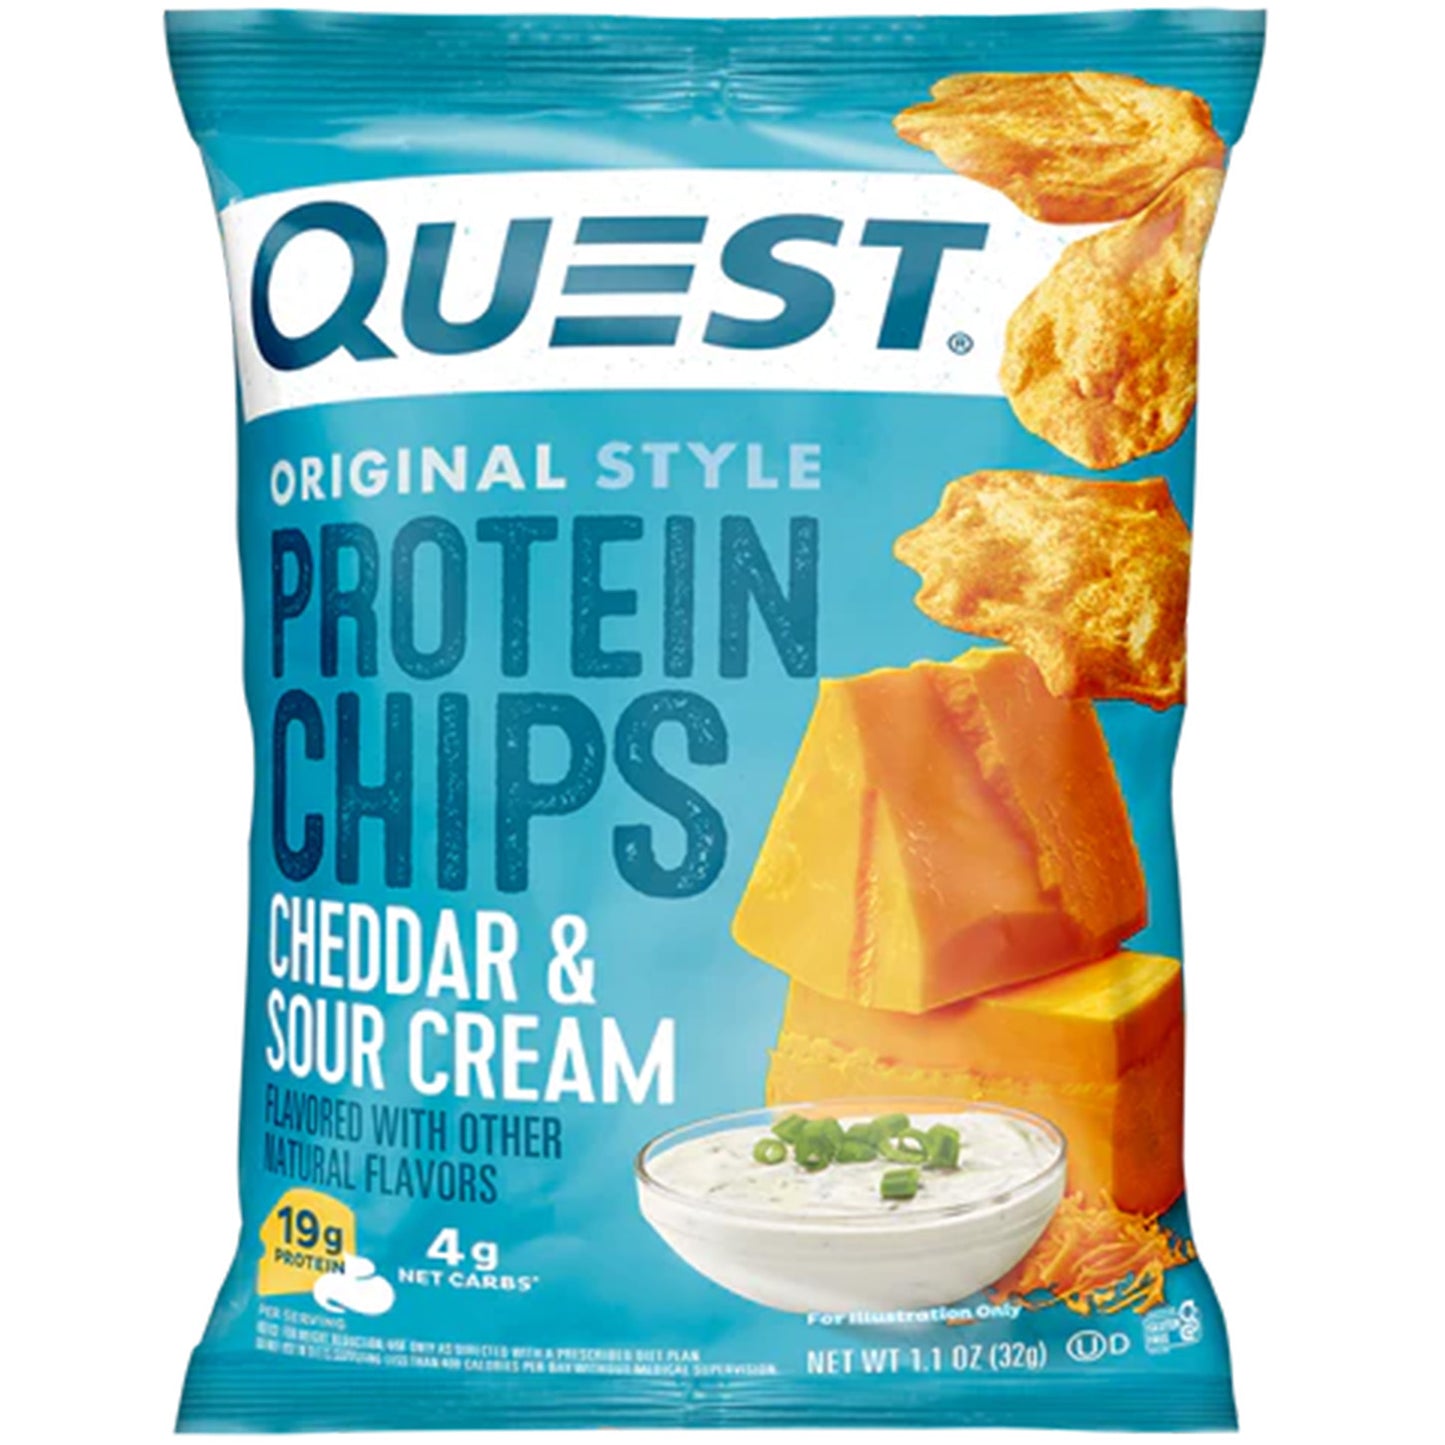 Snacks Saludables y Crujientes: Descubre los Protein Chips de Quest Nutrition | ProHealth Shop [Panamá]